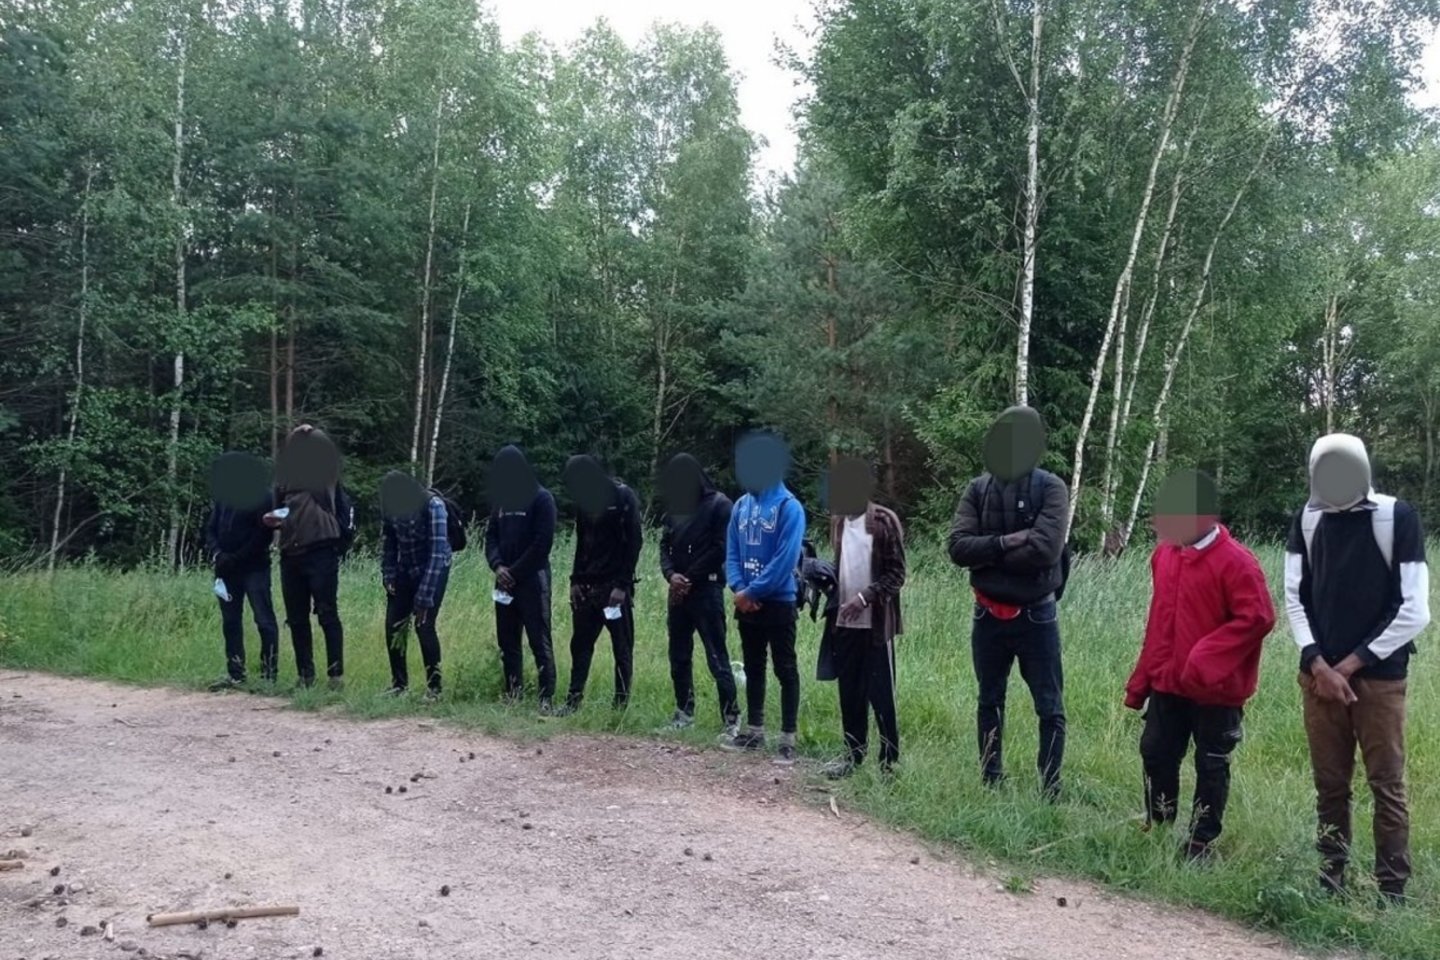 Sulaikyti dar 36 migrantai iš Baltarusijos sieną pažeidę migrantai.<br>VSAT nuotr.